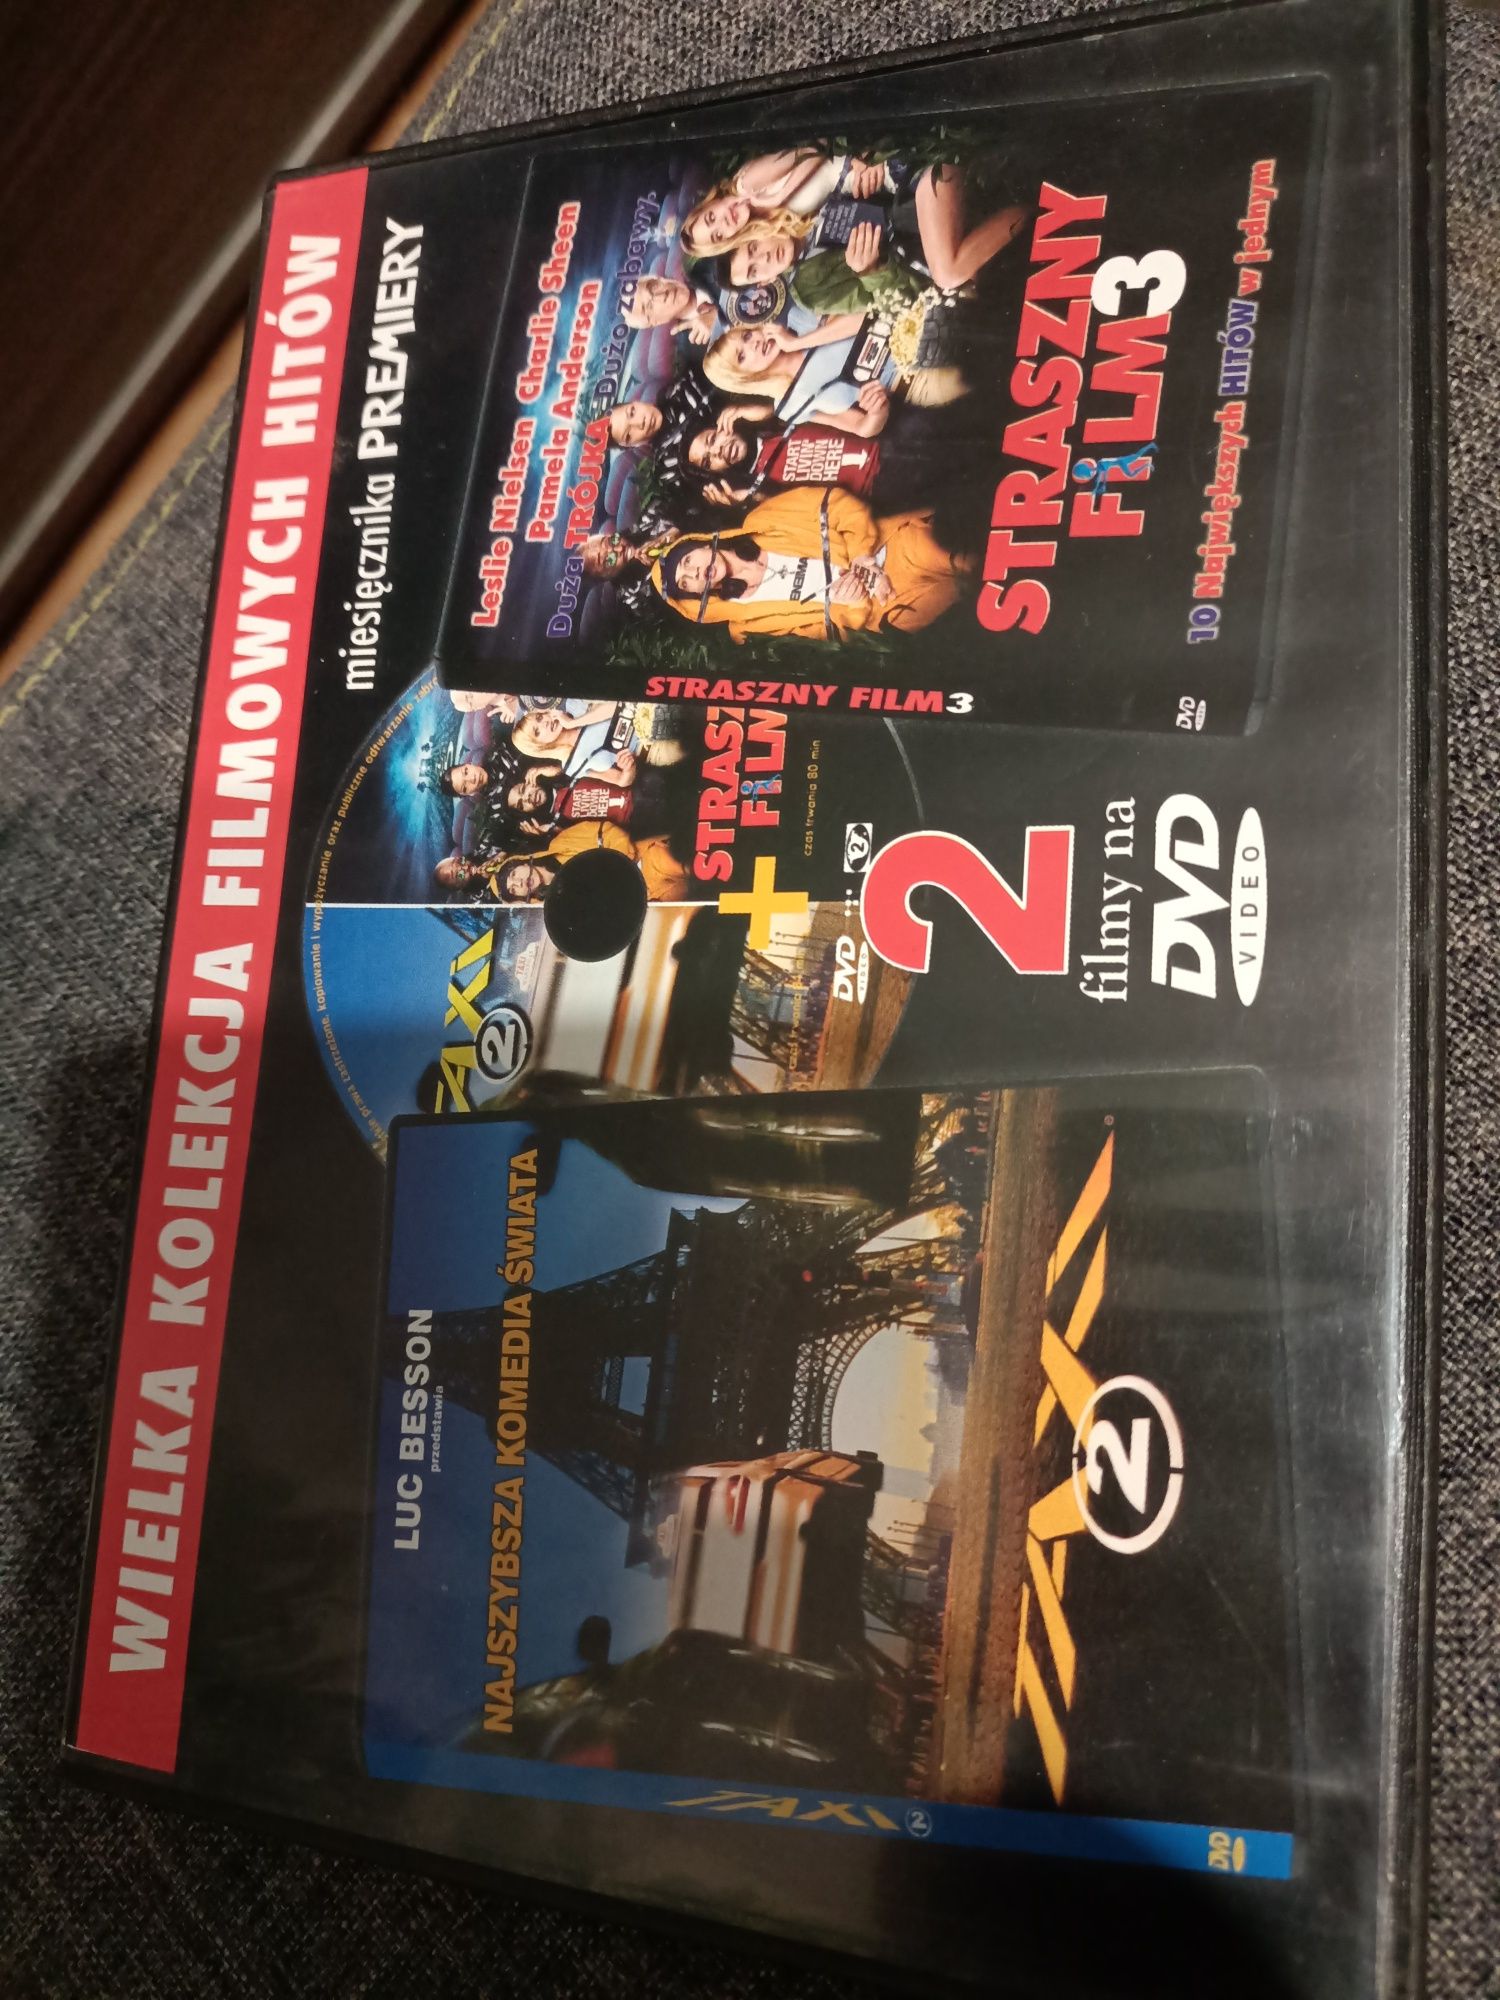 Film DVD Taxi 2 i Straszny film 3